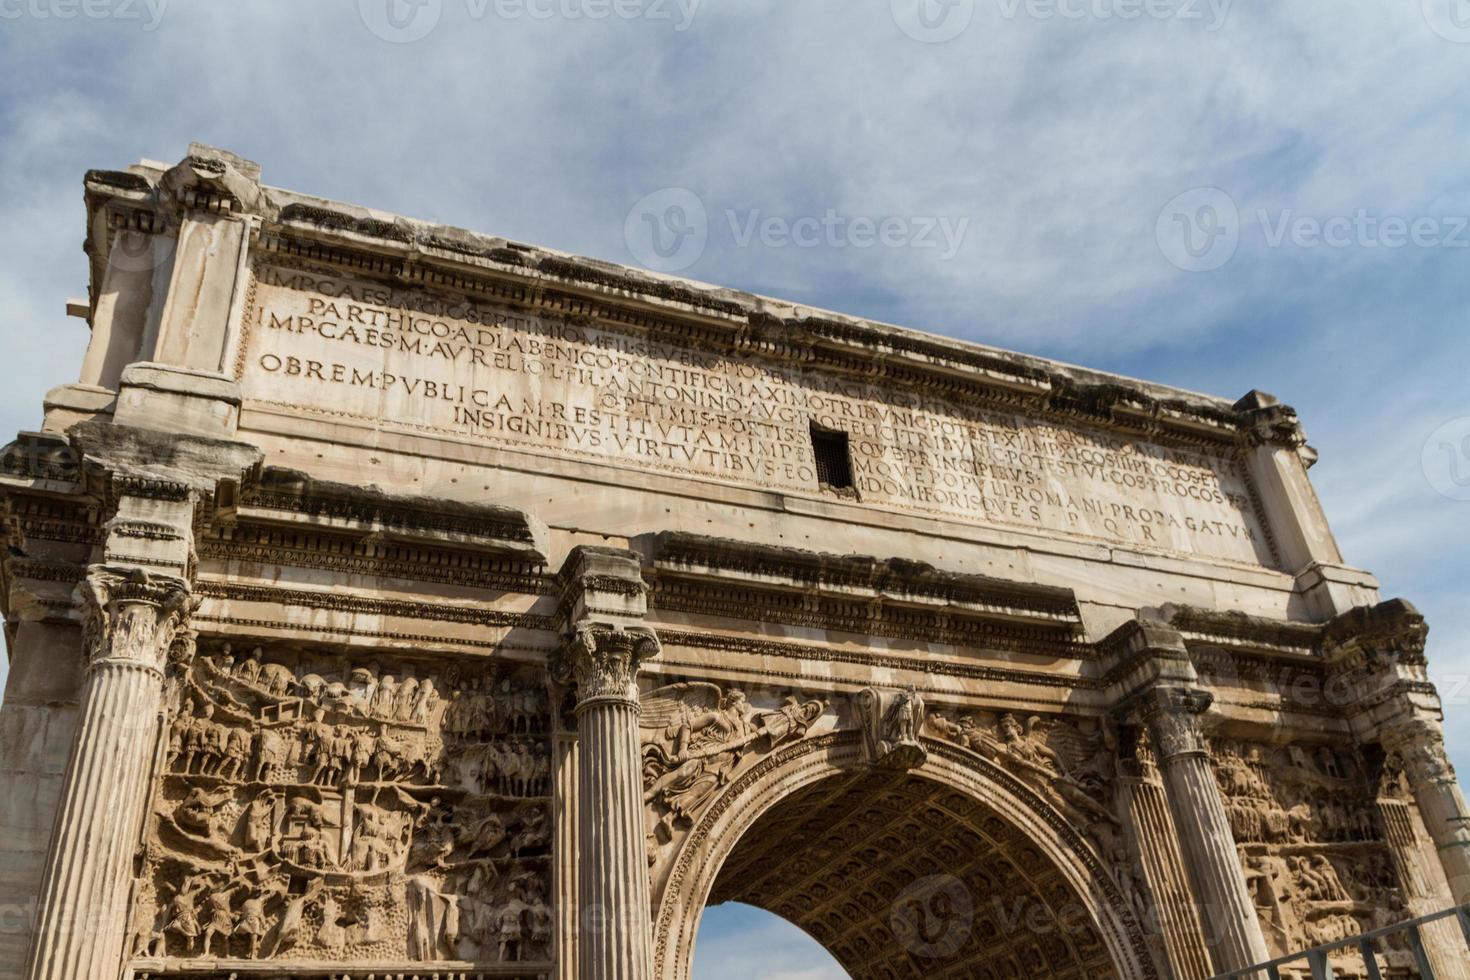 ruines de construction et colonnes antiques à rome, italie photo